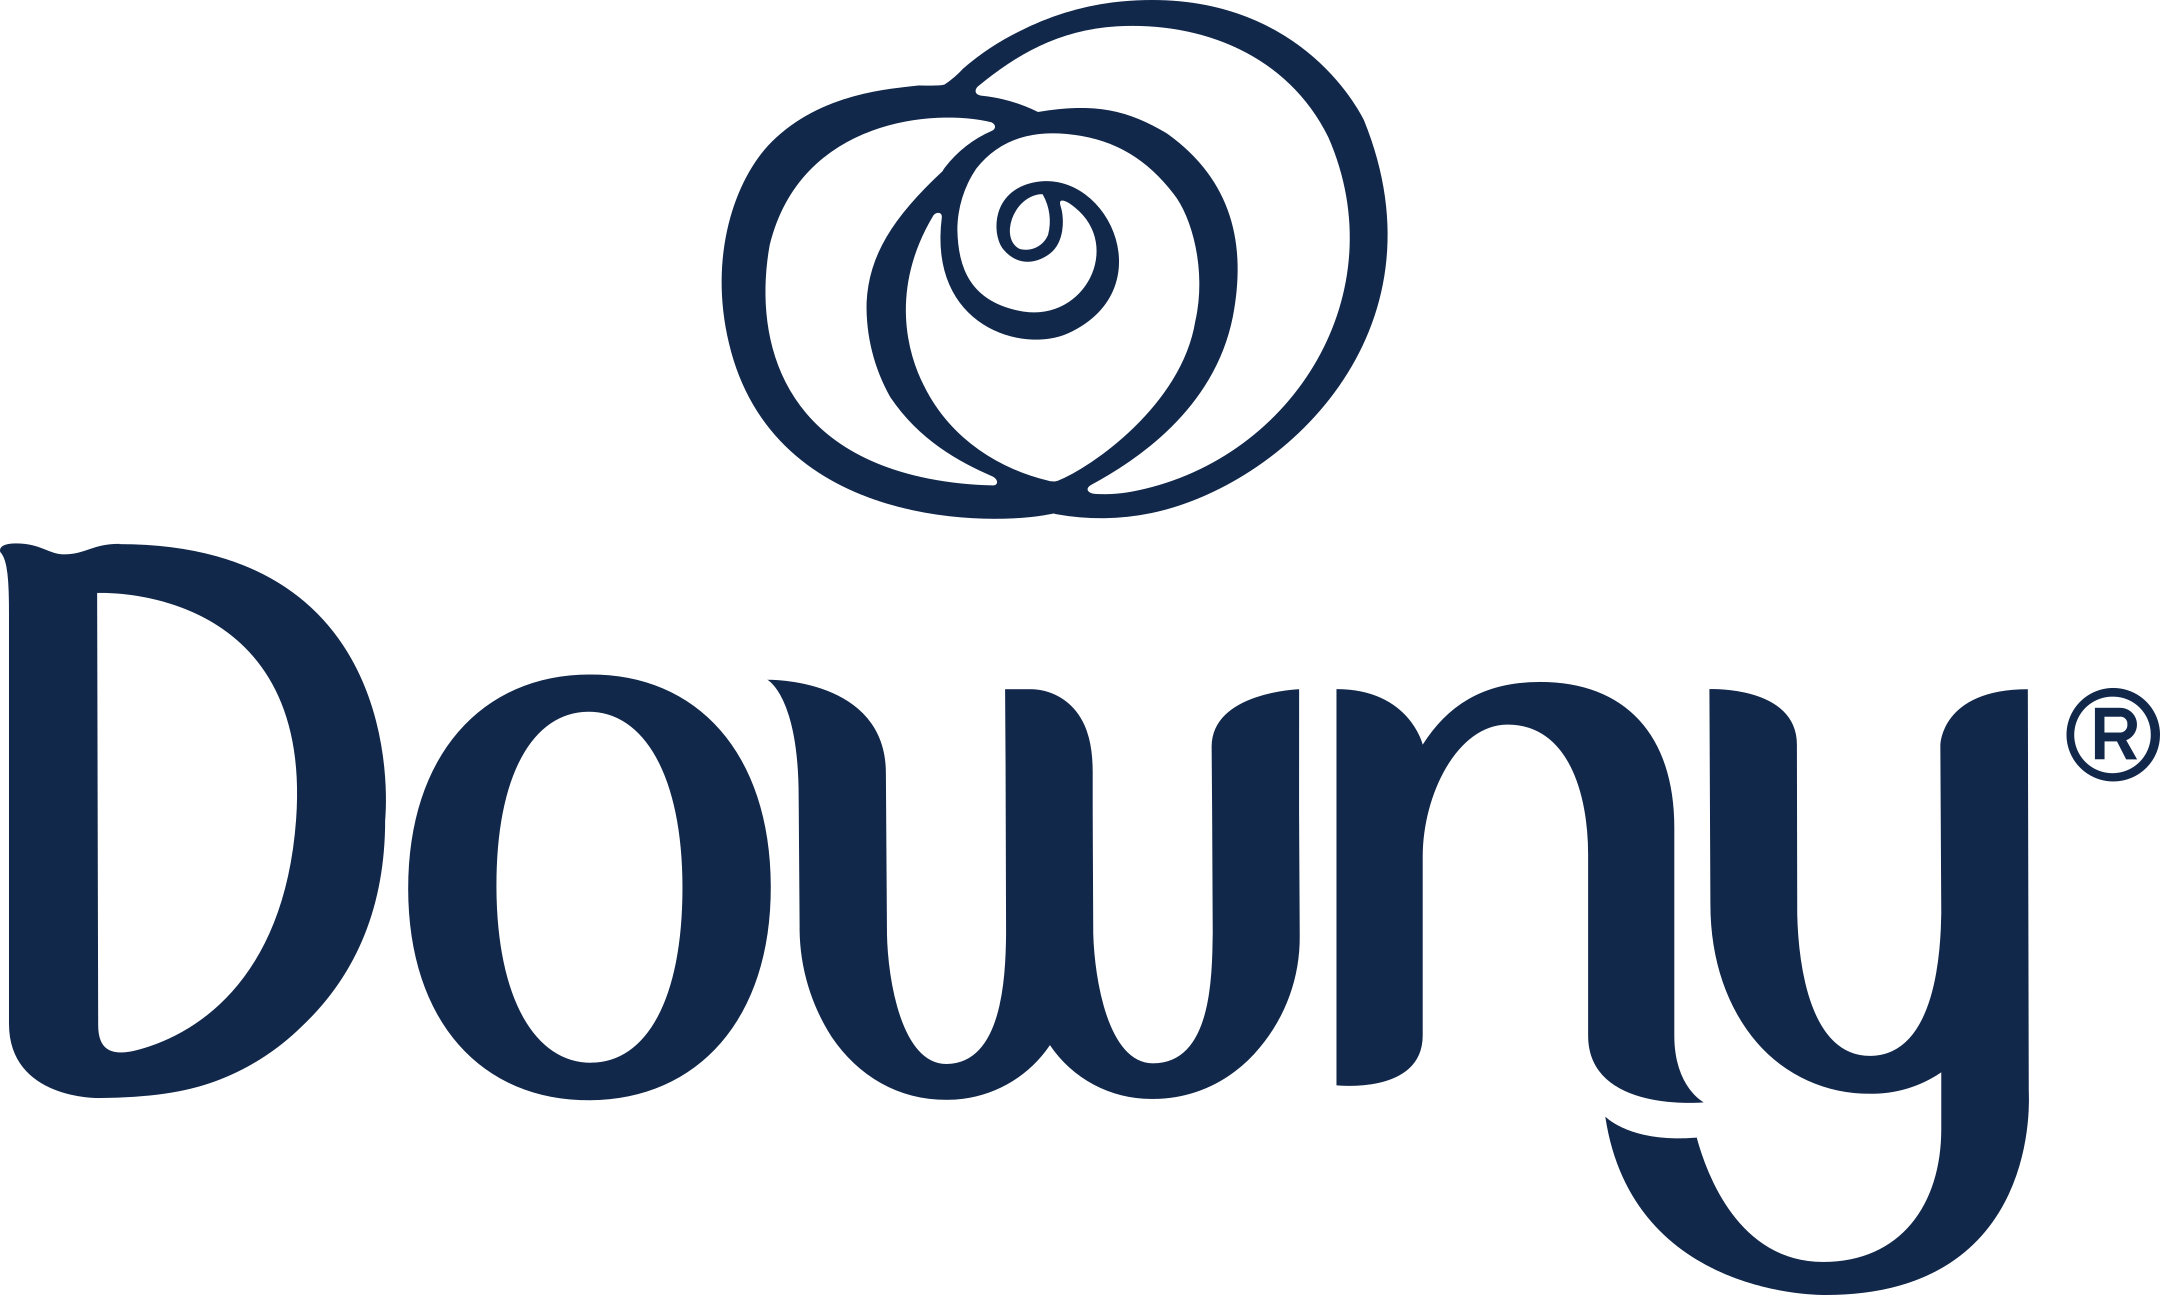 downy logo 1 - Downy Logo